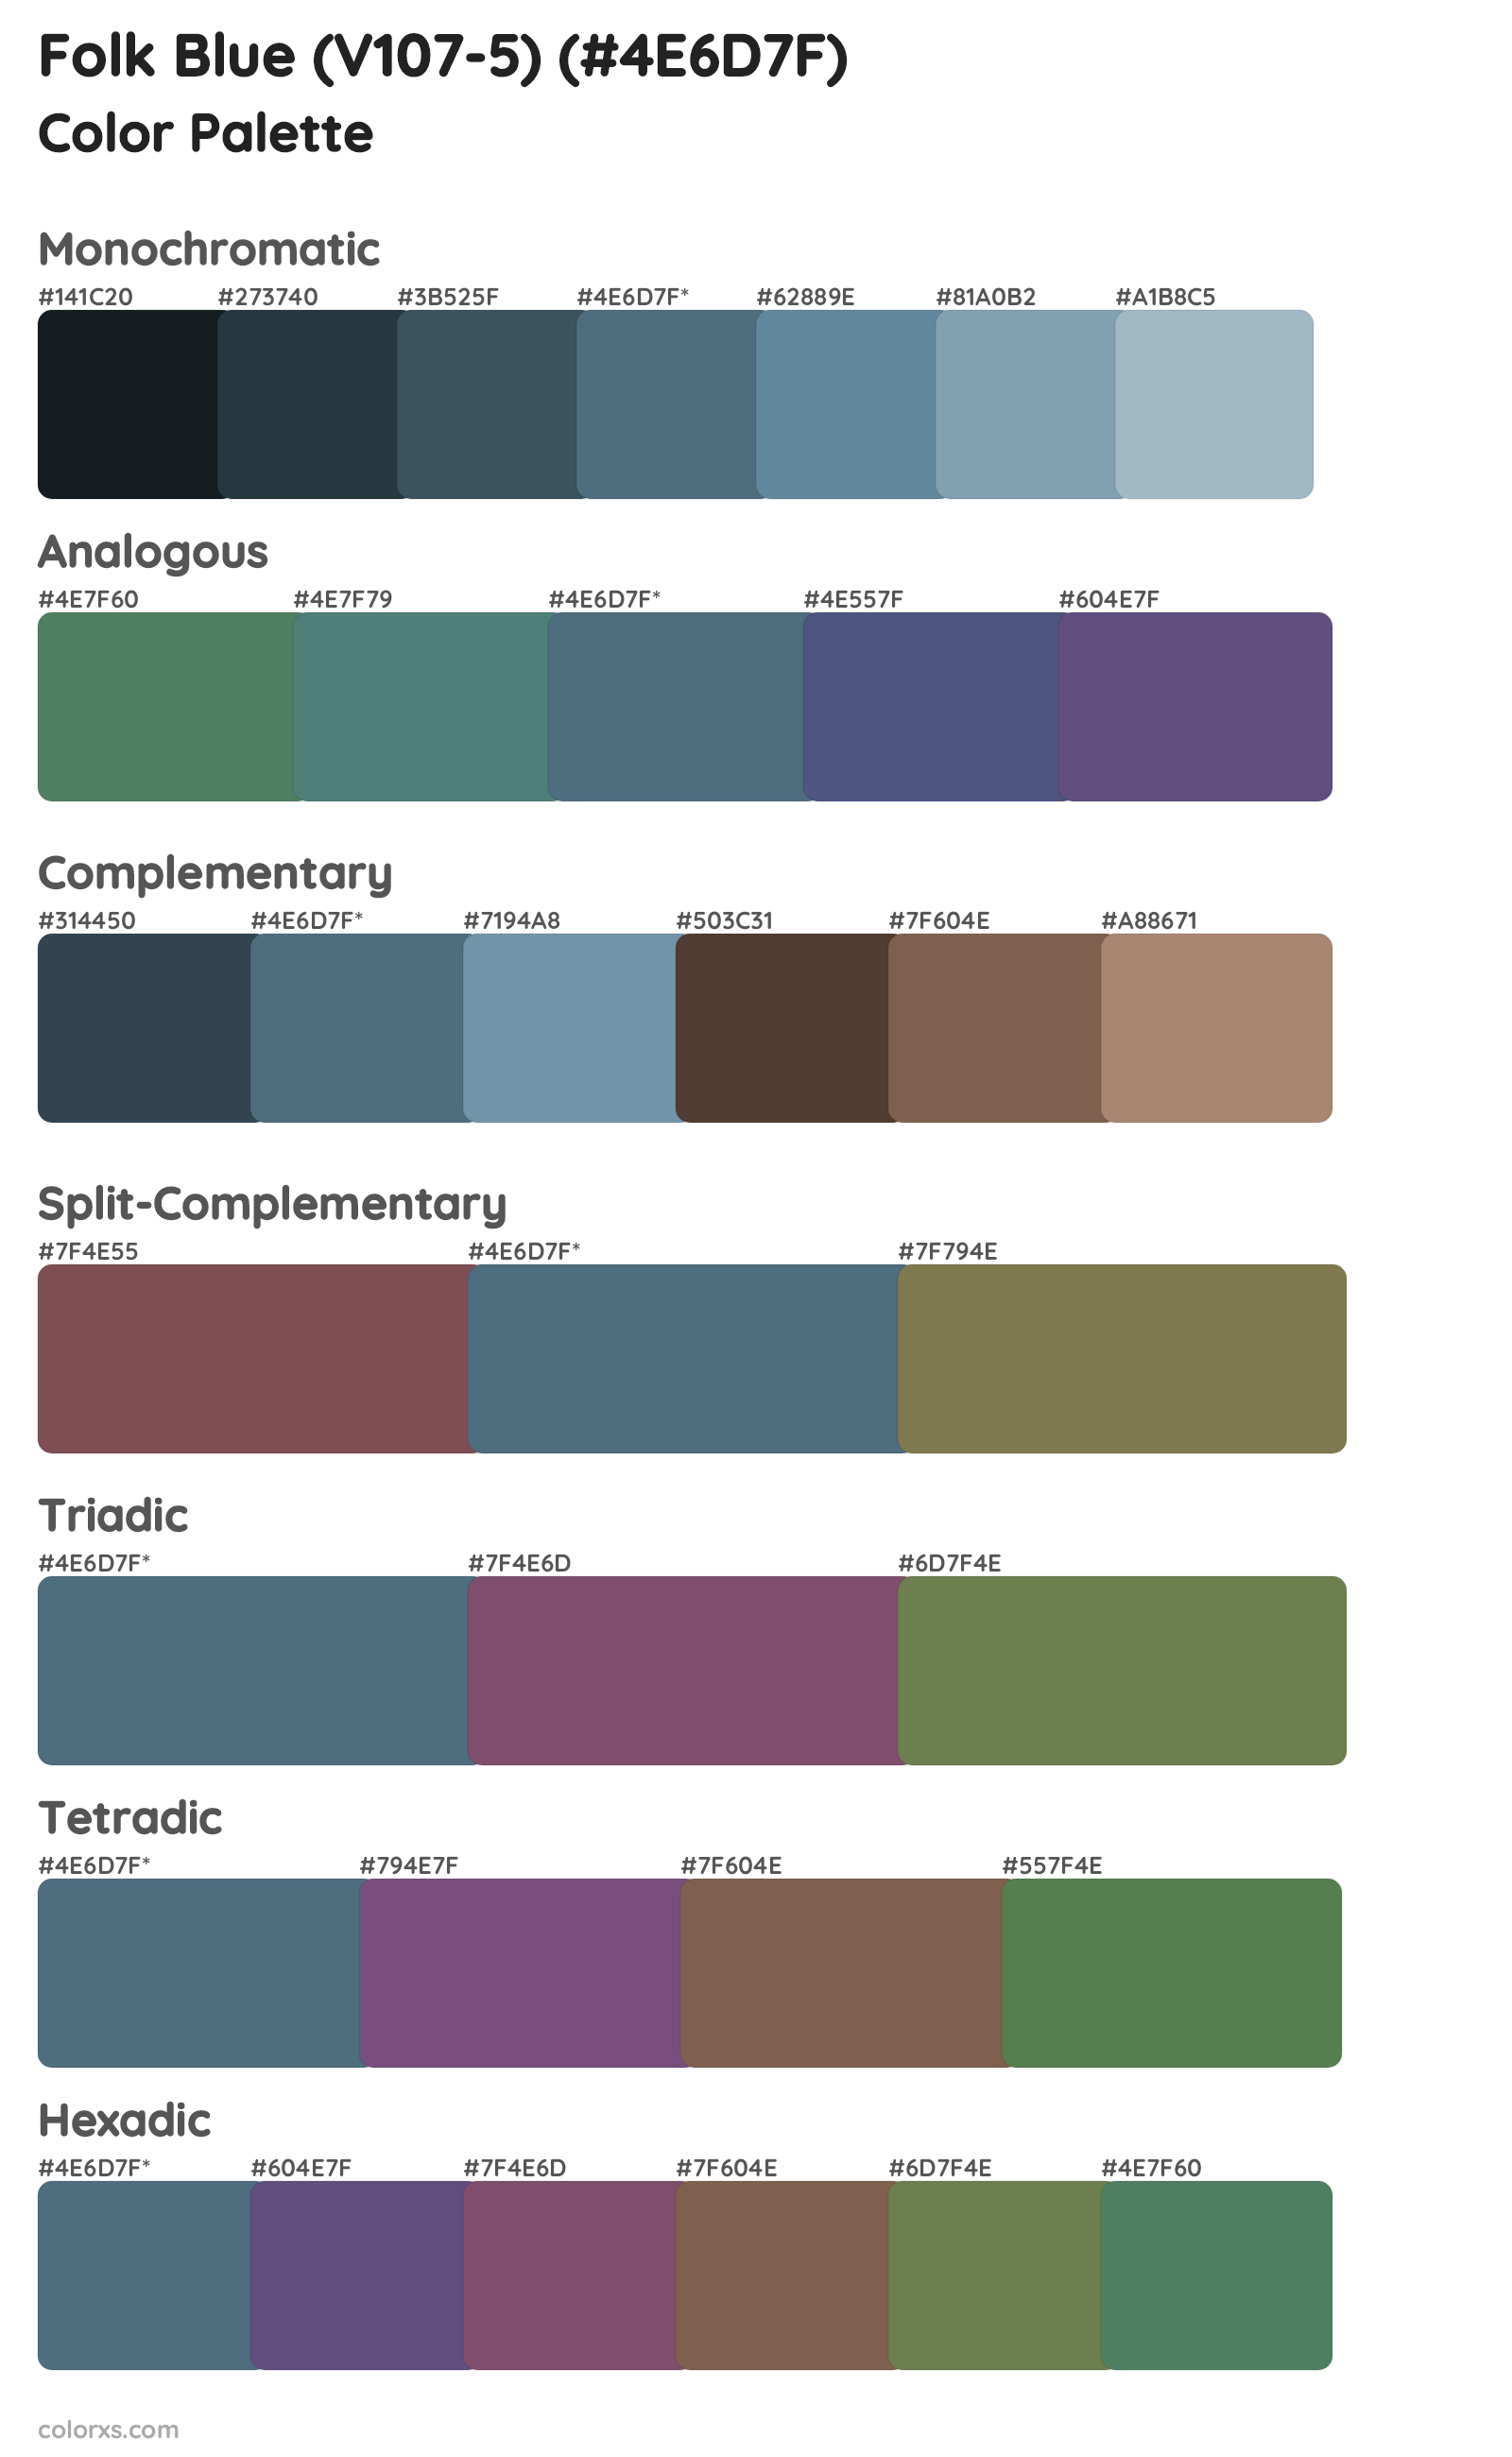 Folk Blue (V107-5) Color Scheme Palettes